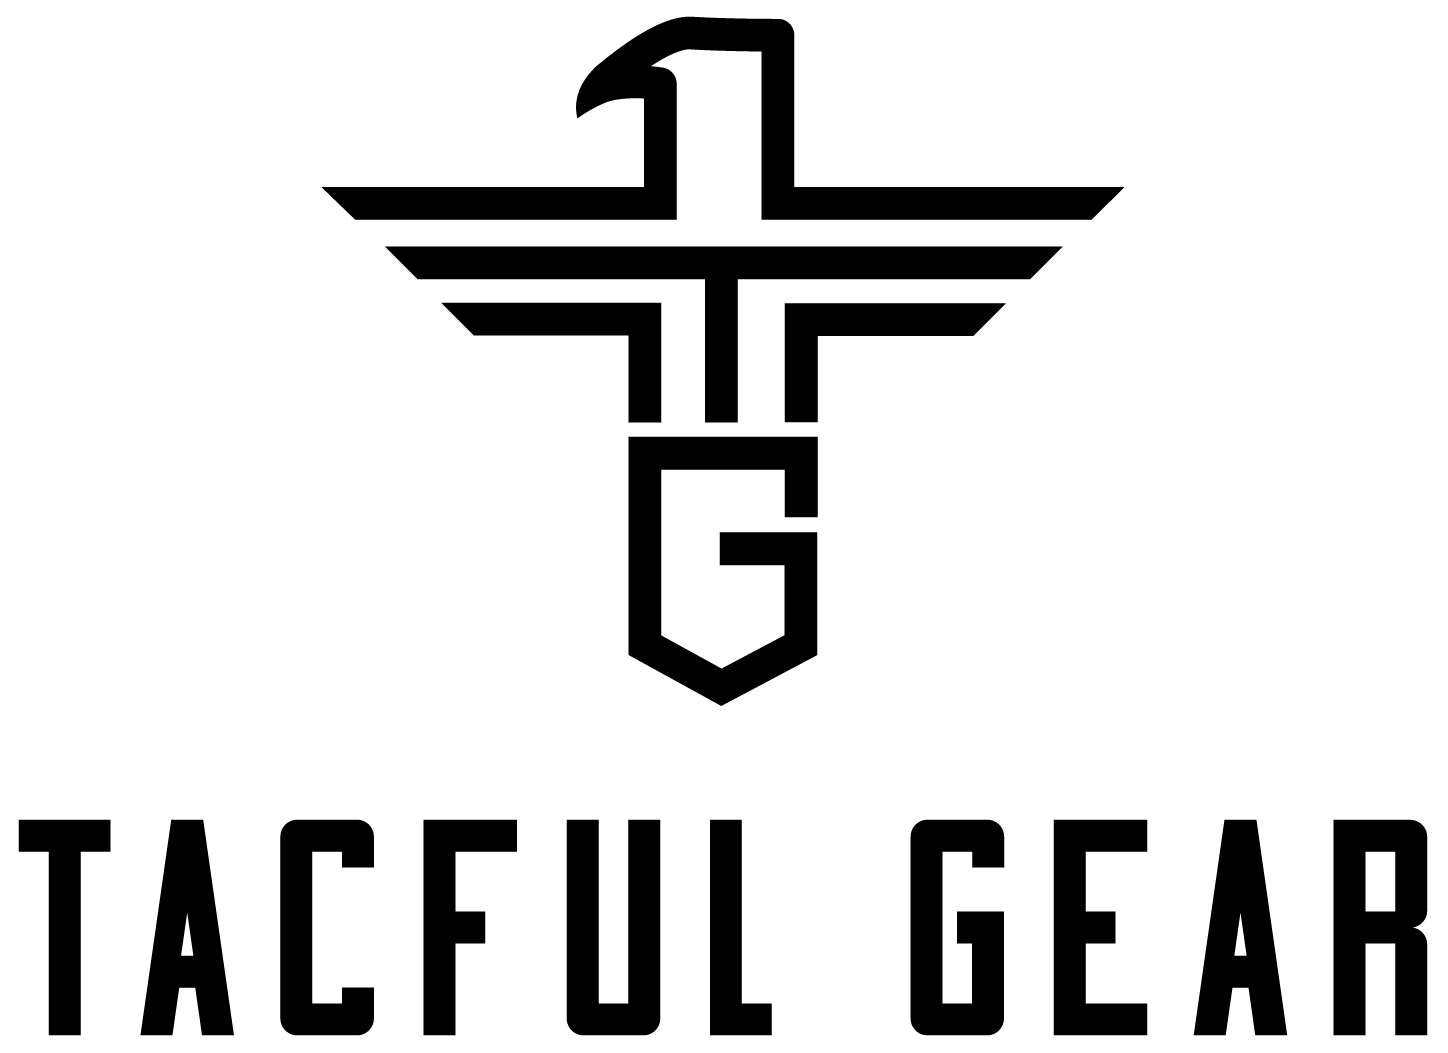 TacFul Gear Logo